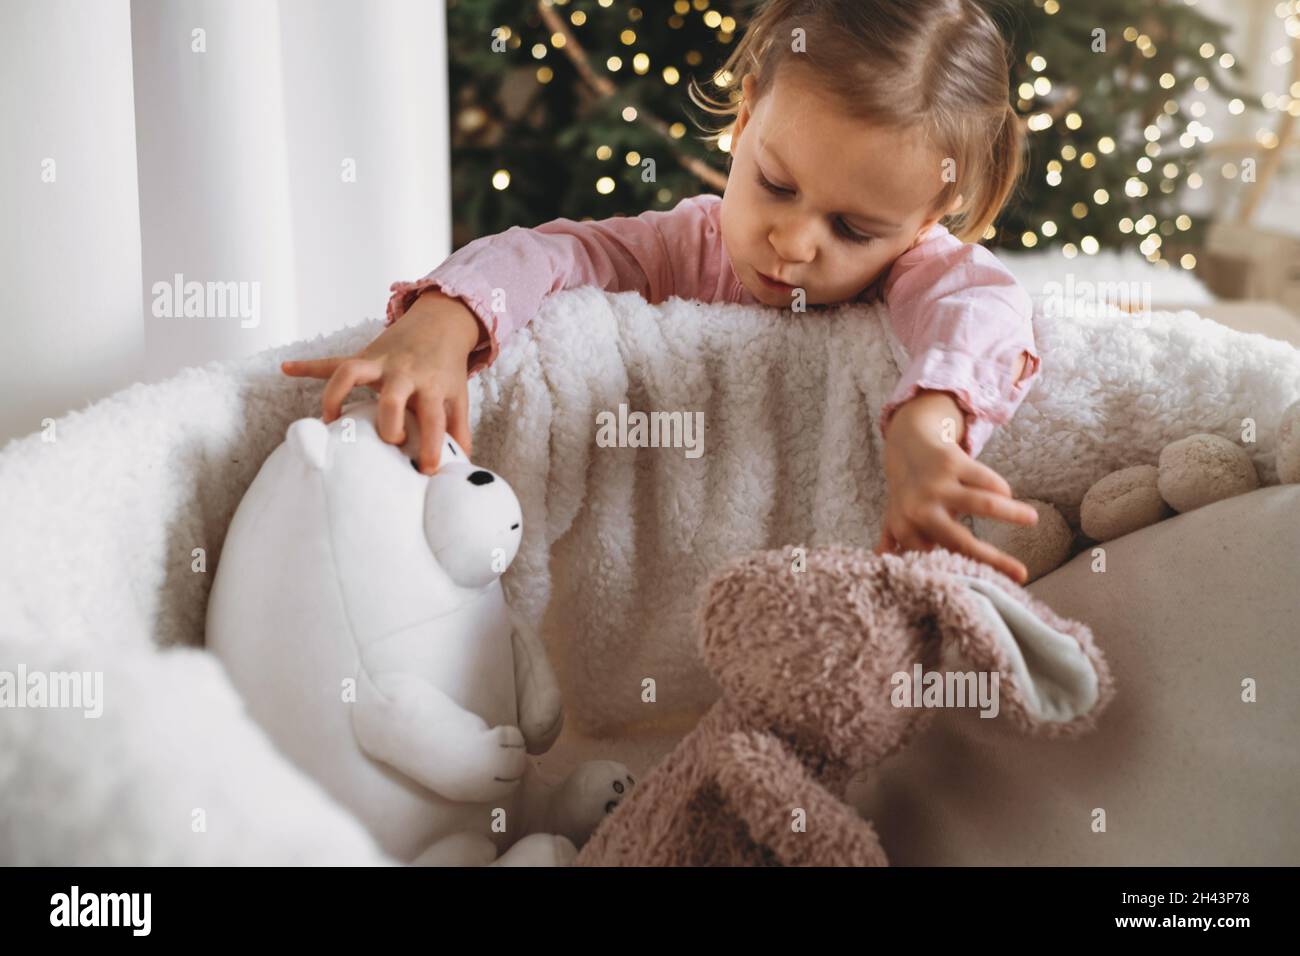 Un enfant adorable attend des cadeaux à la maison après avoir décoré l'arbre de Noël dans un style écologique avec des jouets en bois.Soirée de Noël pour les enfants.Style nordique Banque D'Images